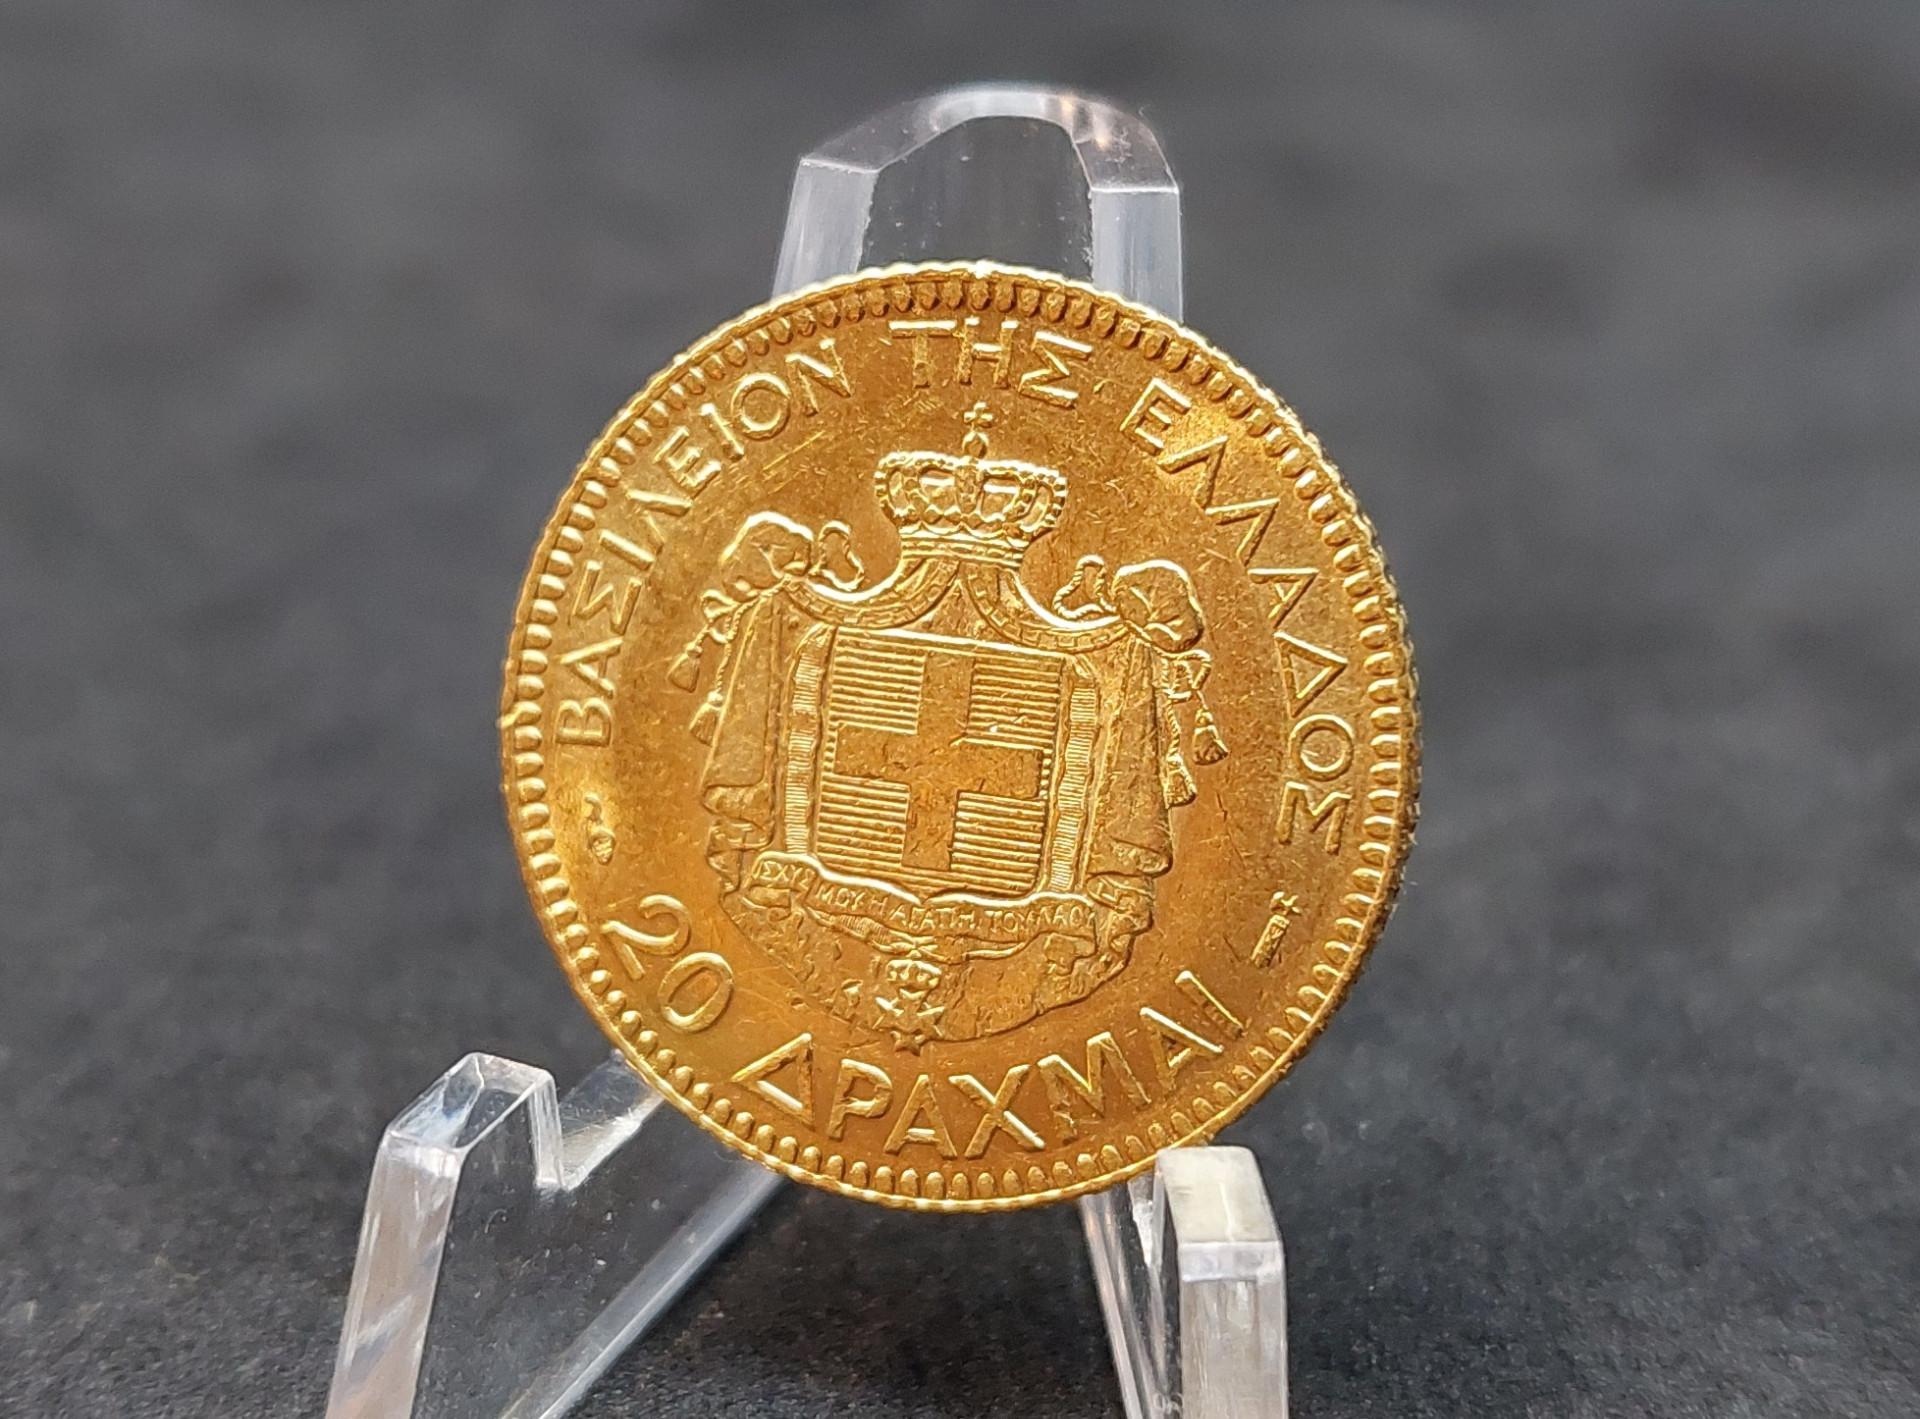 1884 20 Drahmų Auksinė moneta